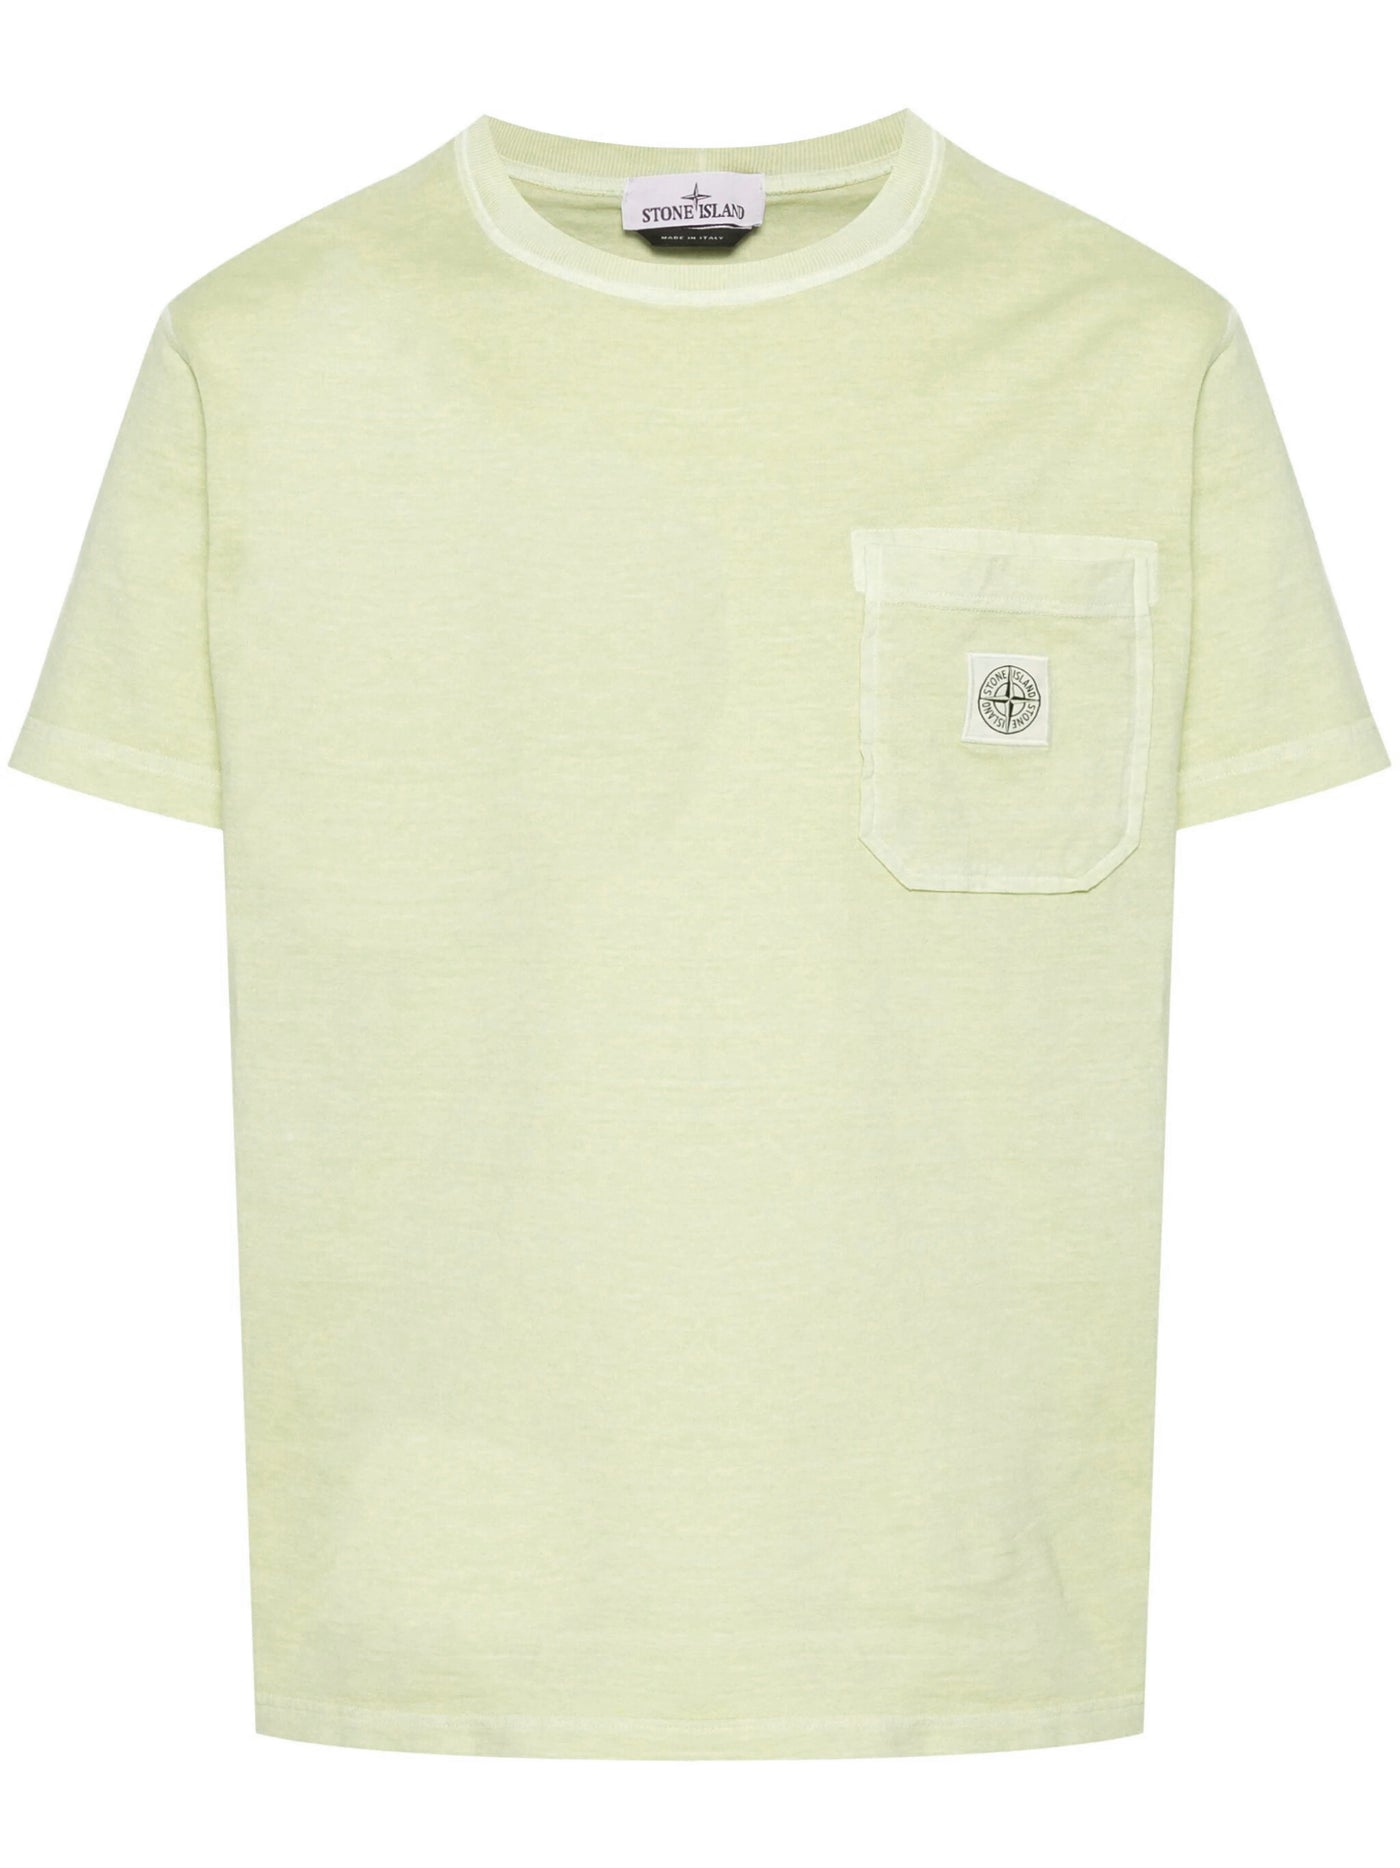 STONE ISLAND - Tee Shirt délavé à poche jaune pâle